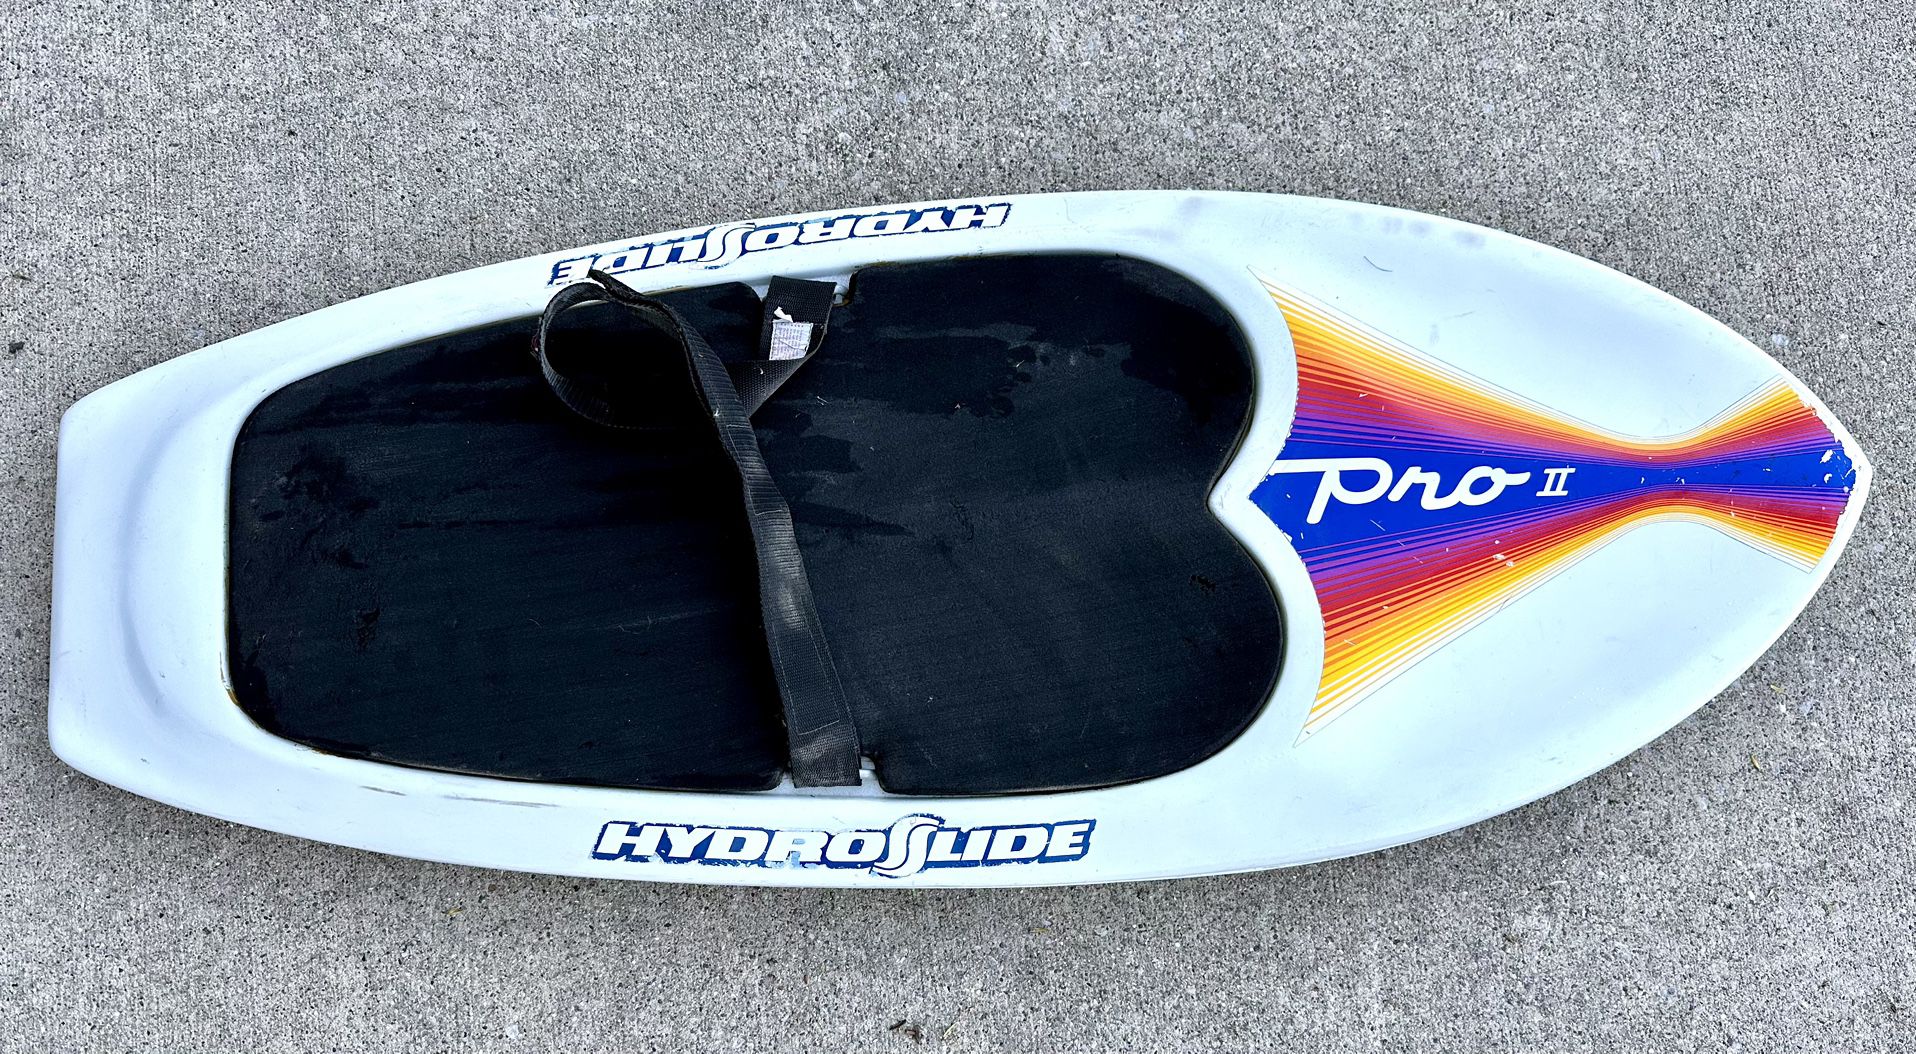 Pro II 2 HydroSlide Knee Board - white - intermediate - boat water ski hydro slide kneeboard sports